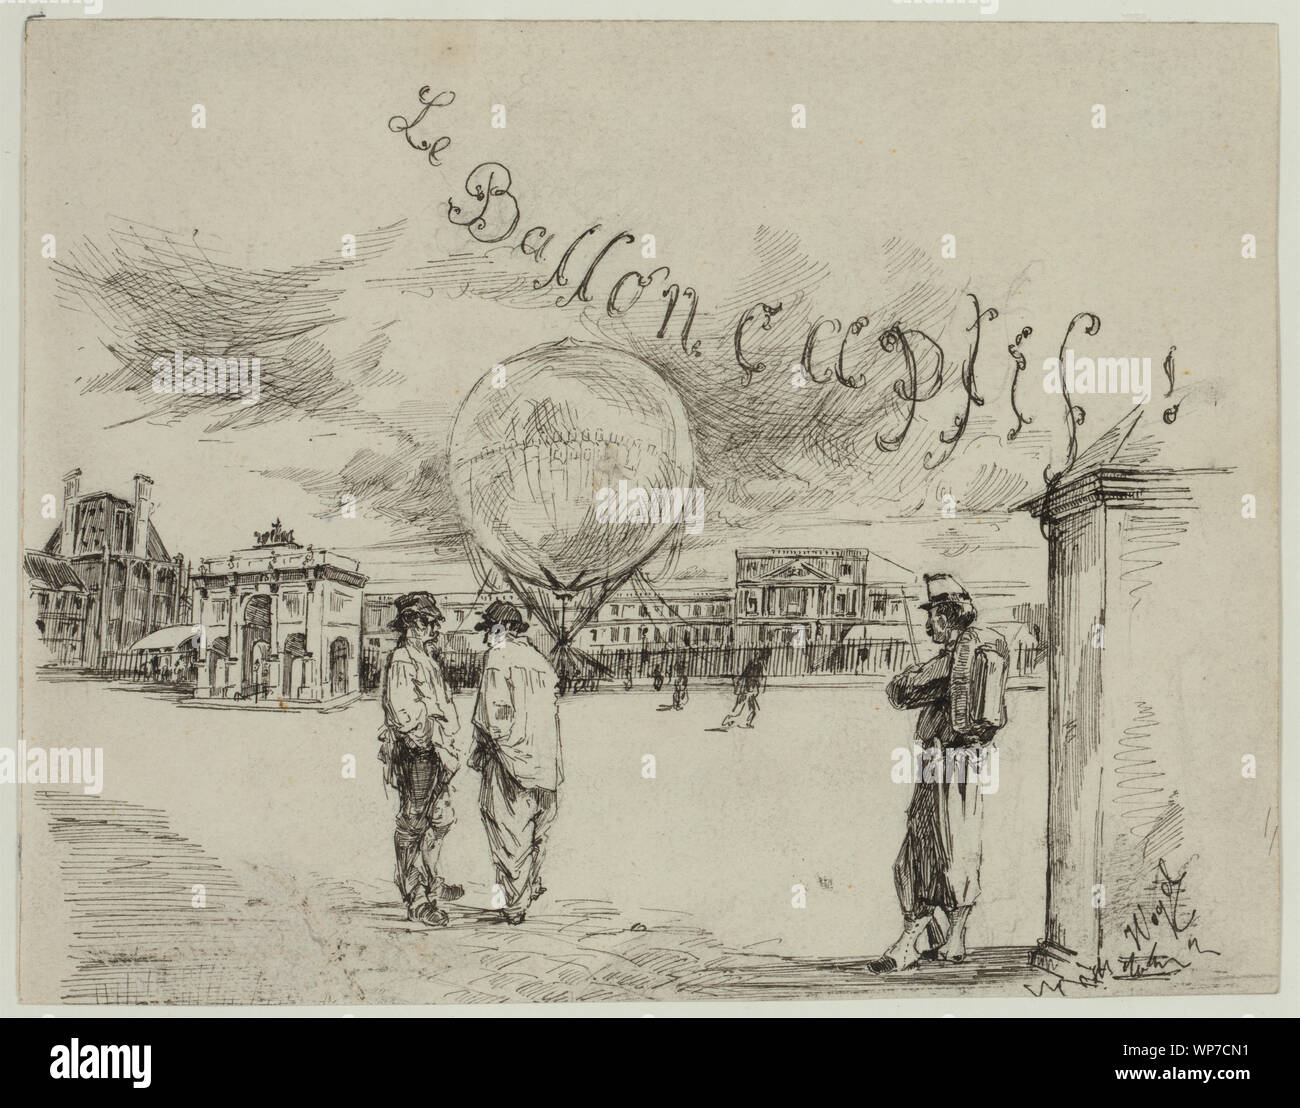 Le Ballon captif!; Zeichnung zeigt einen fesselballon von Henri Giffard entworfen und 1867 ausgestellt, in einer Stadt, die Plaza angezeigt, mit zwei Männern im Vordergrund unterhalten und ein uniformierter Wachmann. (Quelle: A.G. Renstrom, LC-Personal, 1981-82.); Stockfoto